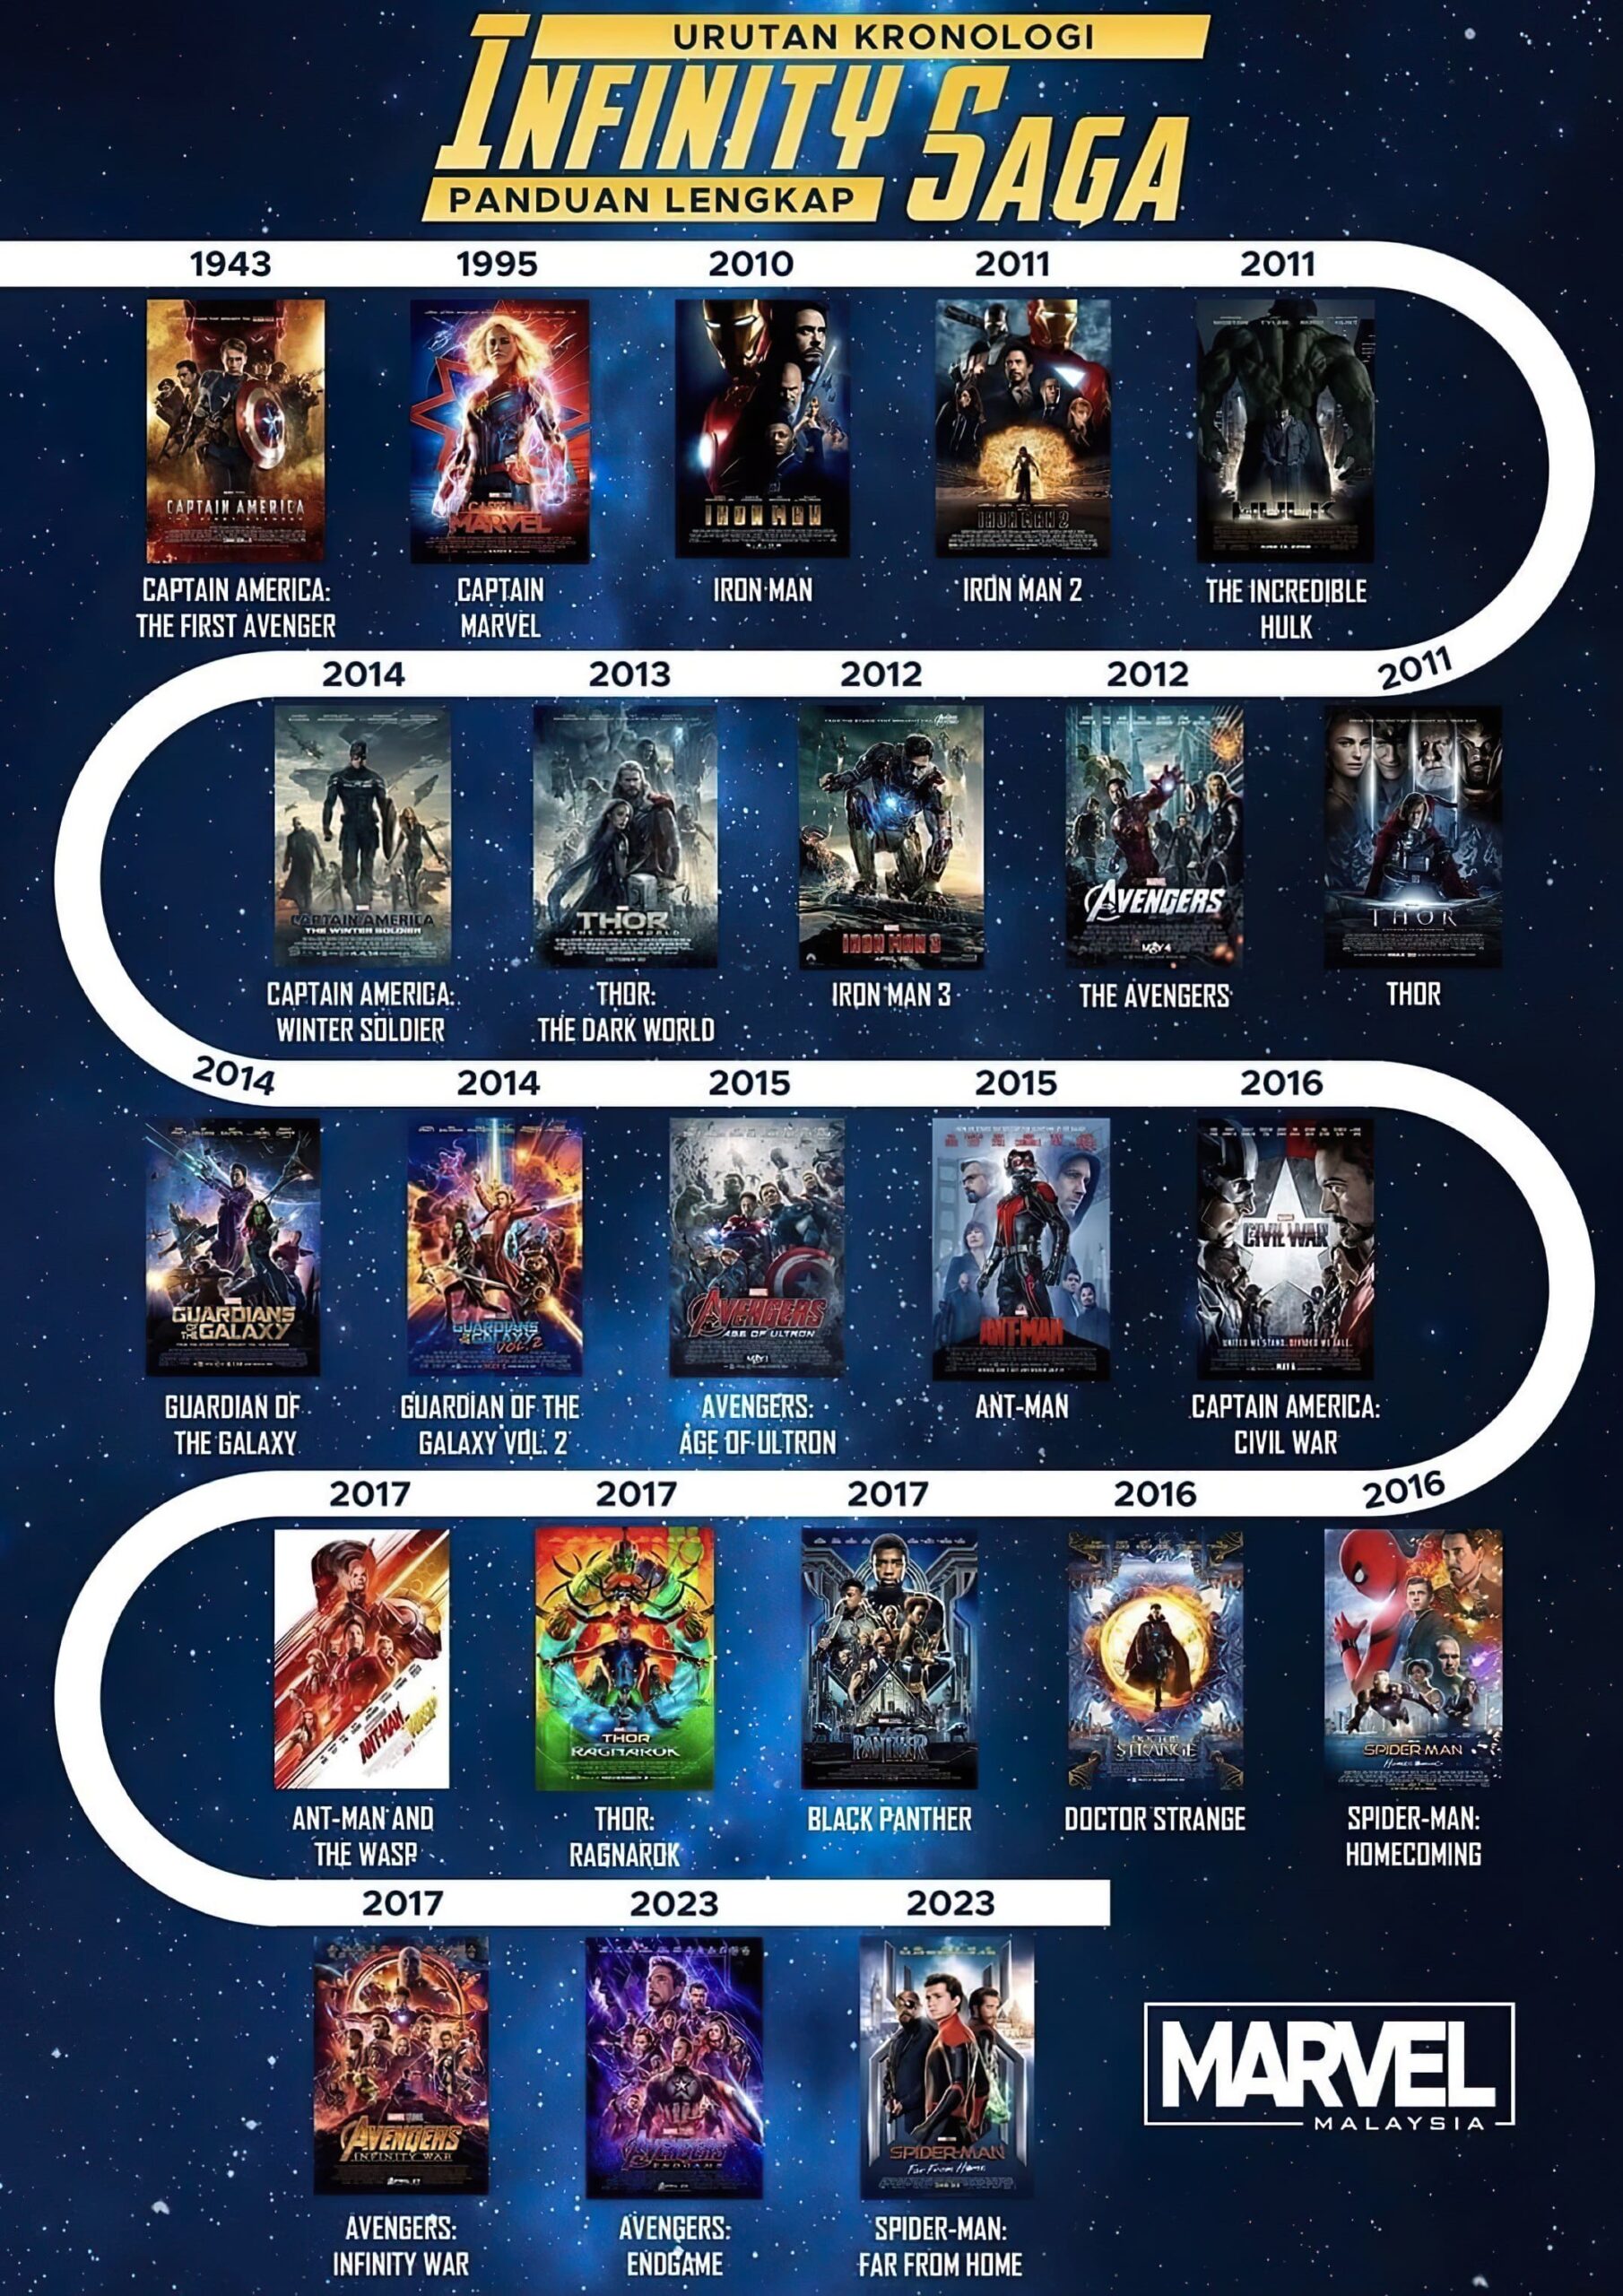 marvel's movies timeline